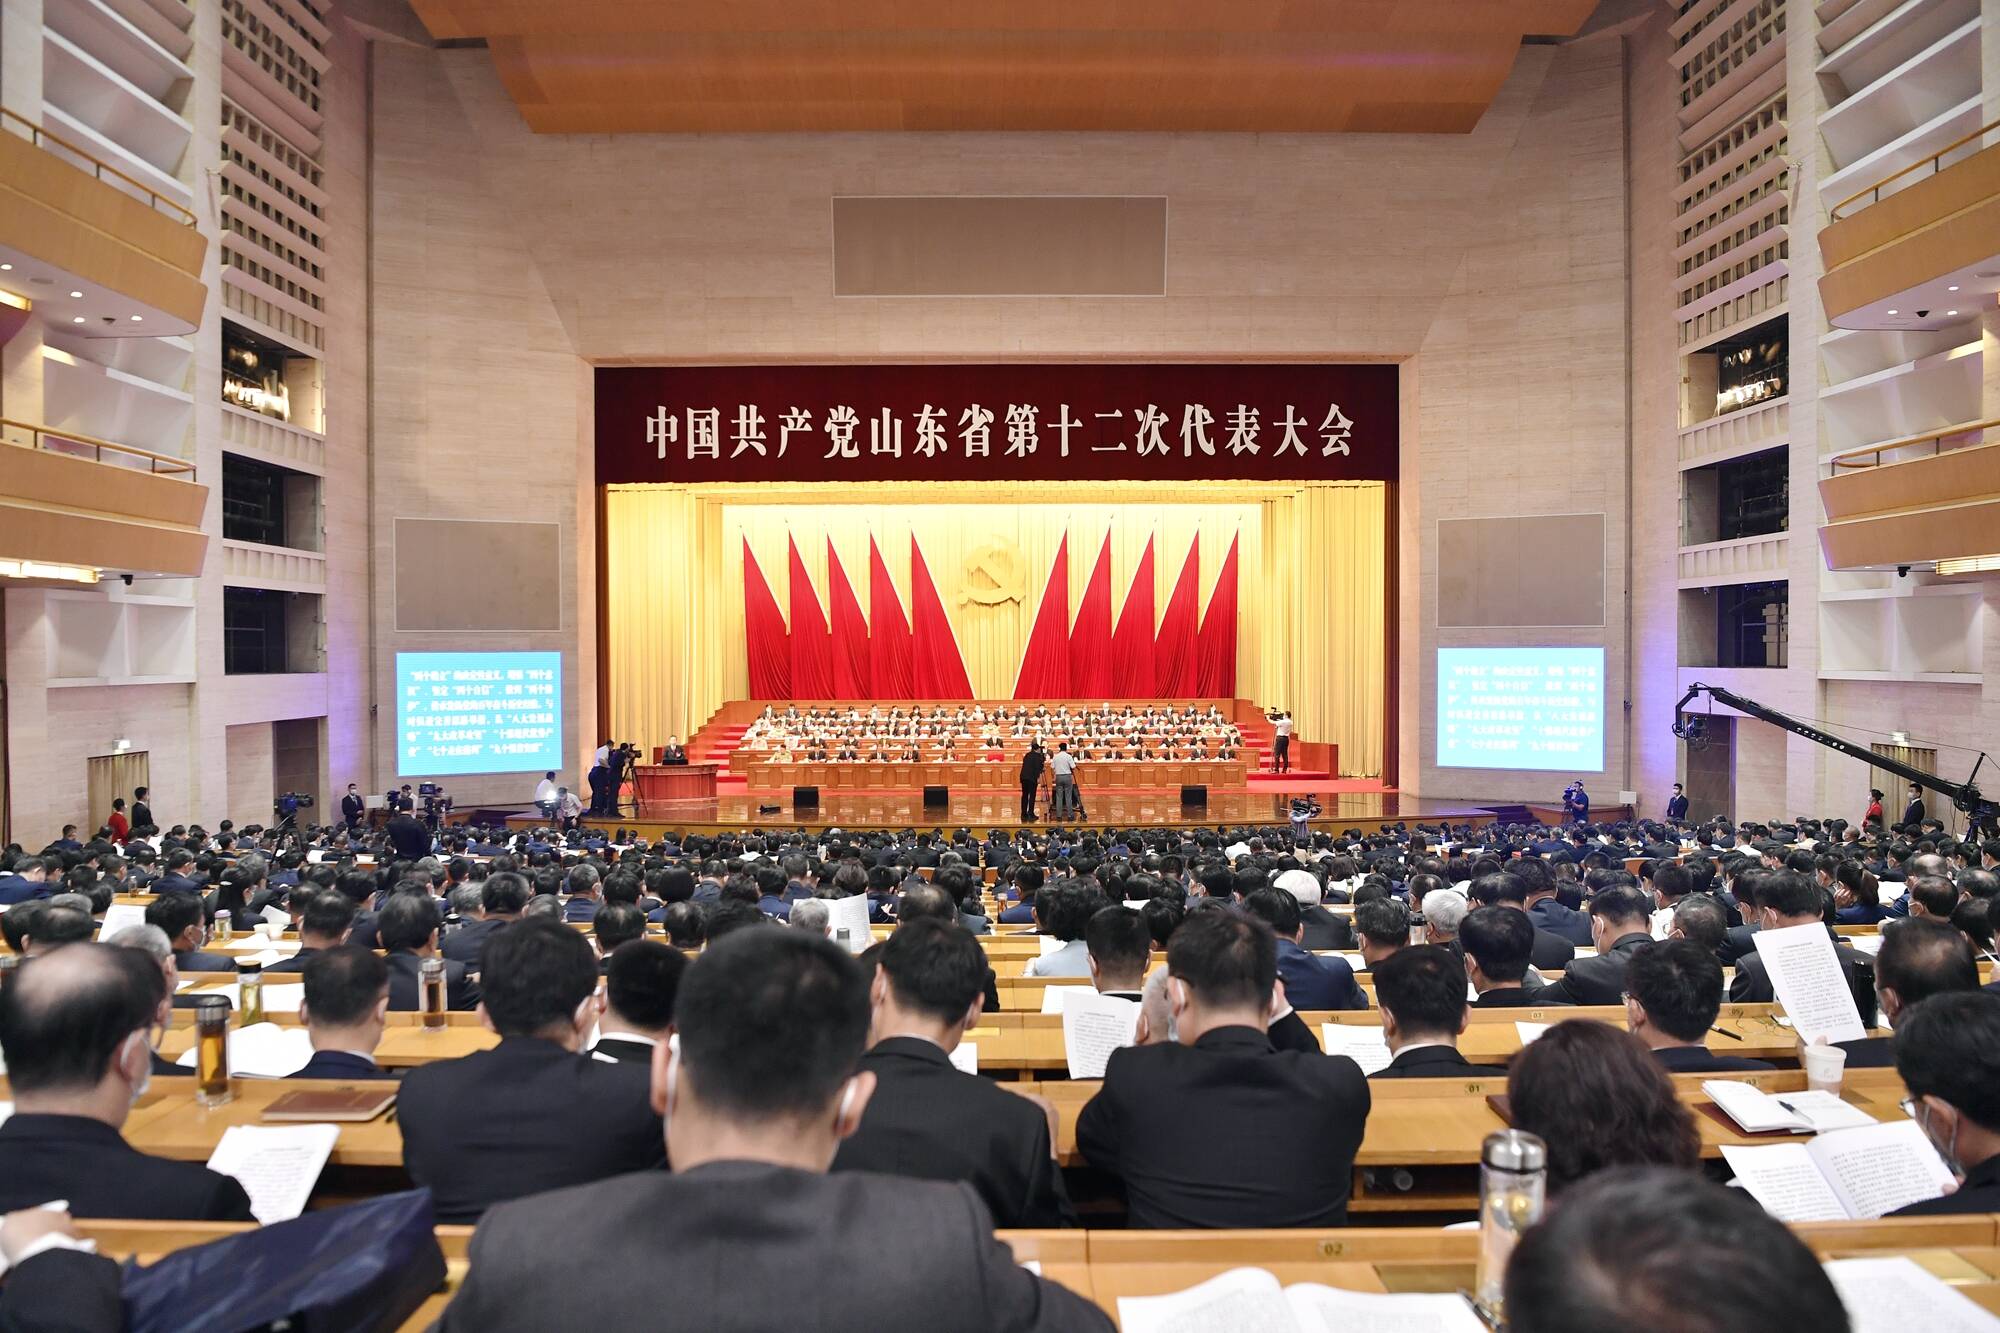 高清組圖 | 中國共產黨山東省第十二次代表大會開幕